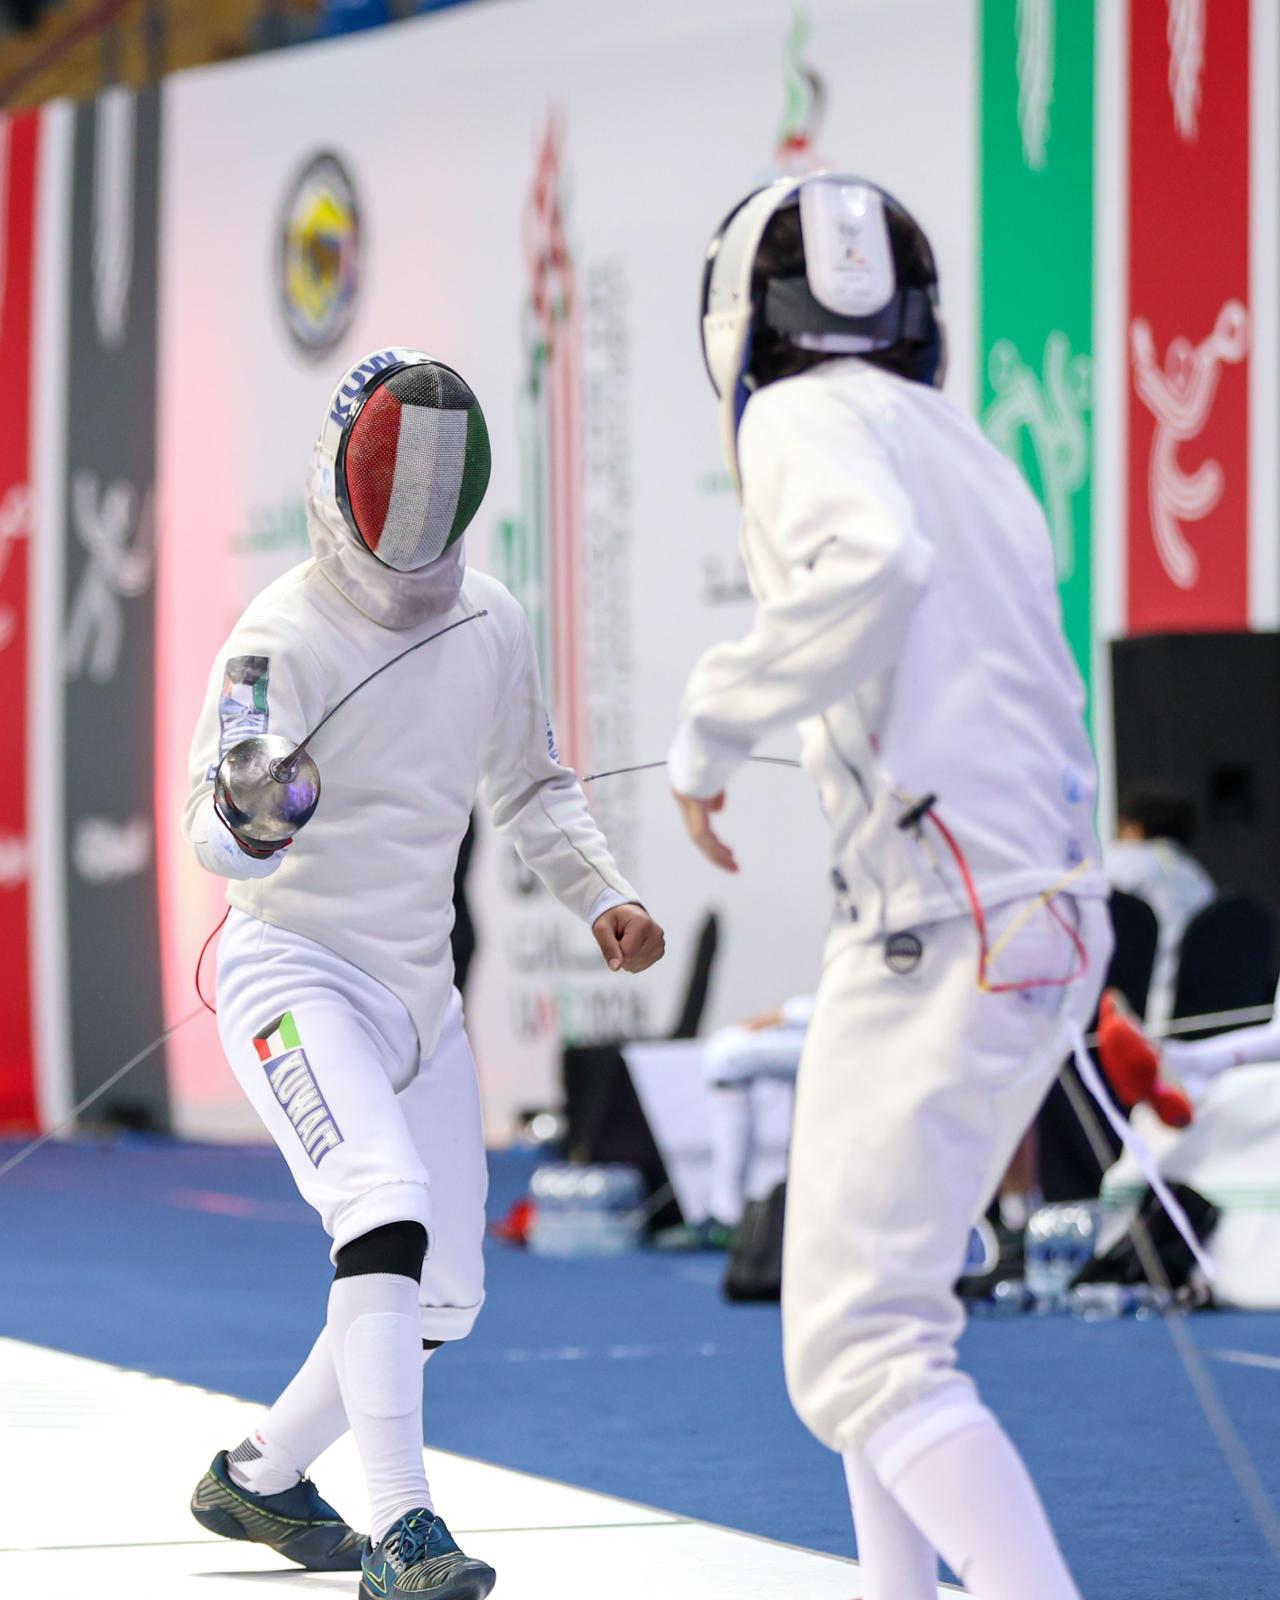 لاعب منتخب الكويت في إحدى منافسات المبارزة